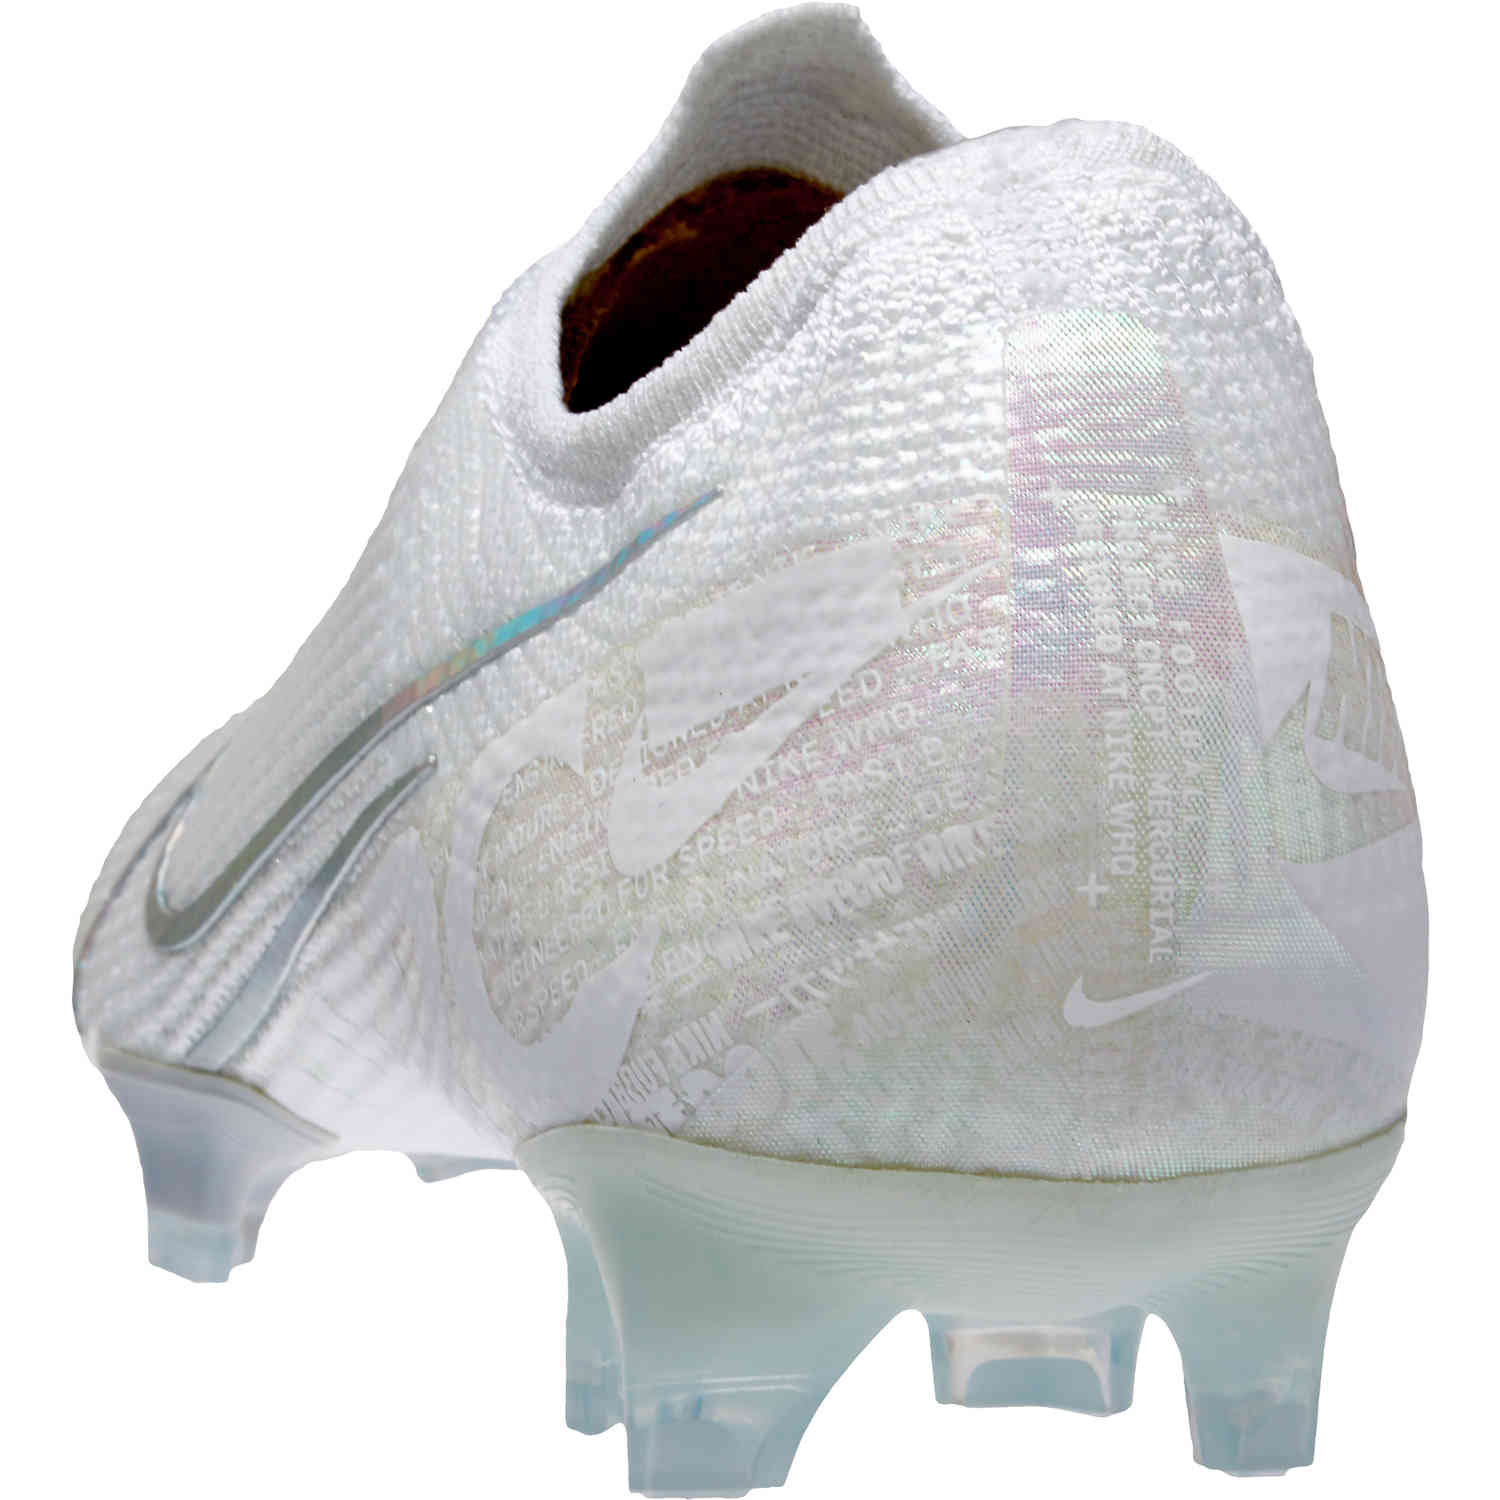 Nike mercurial vapor 13 elite fg terra pack soccerpro